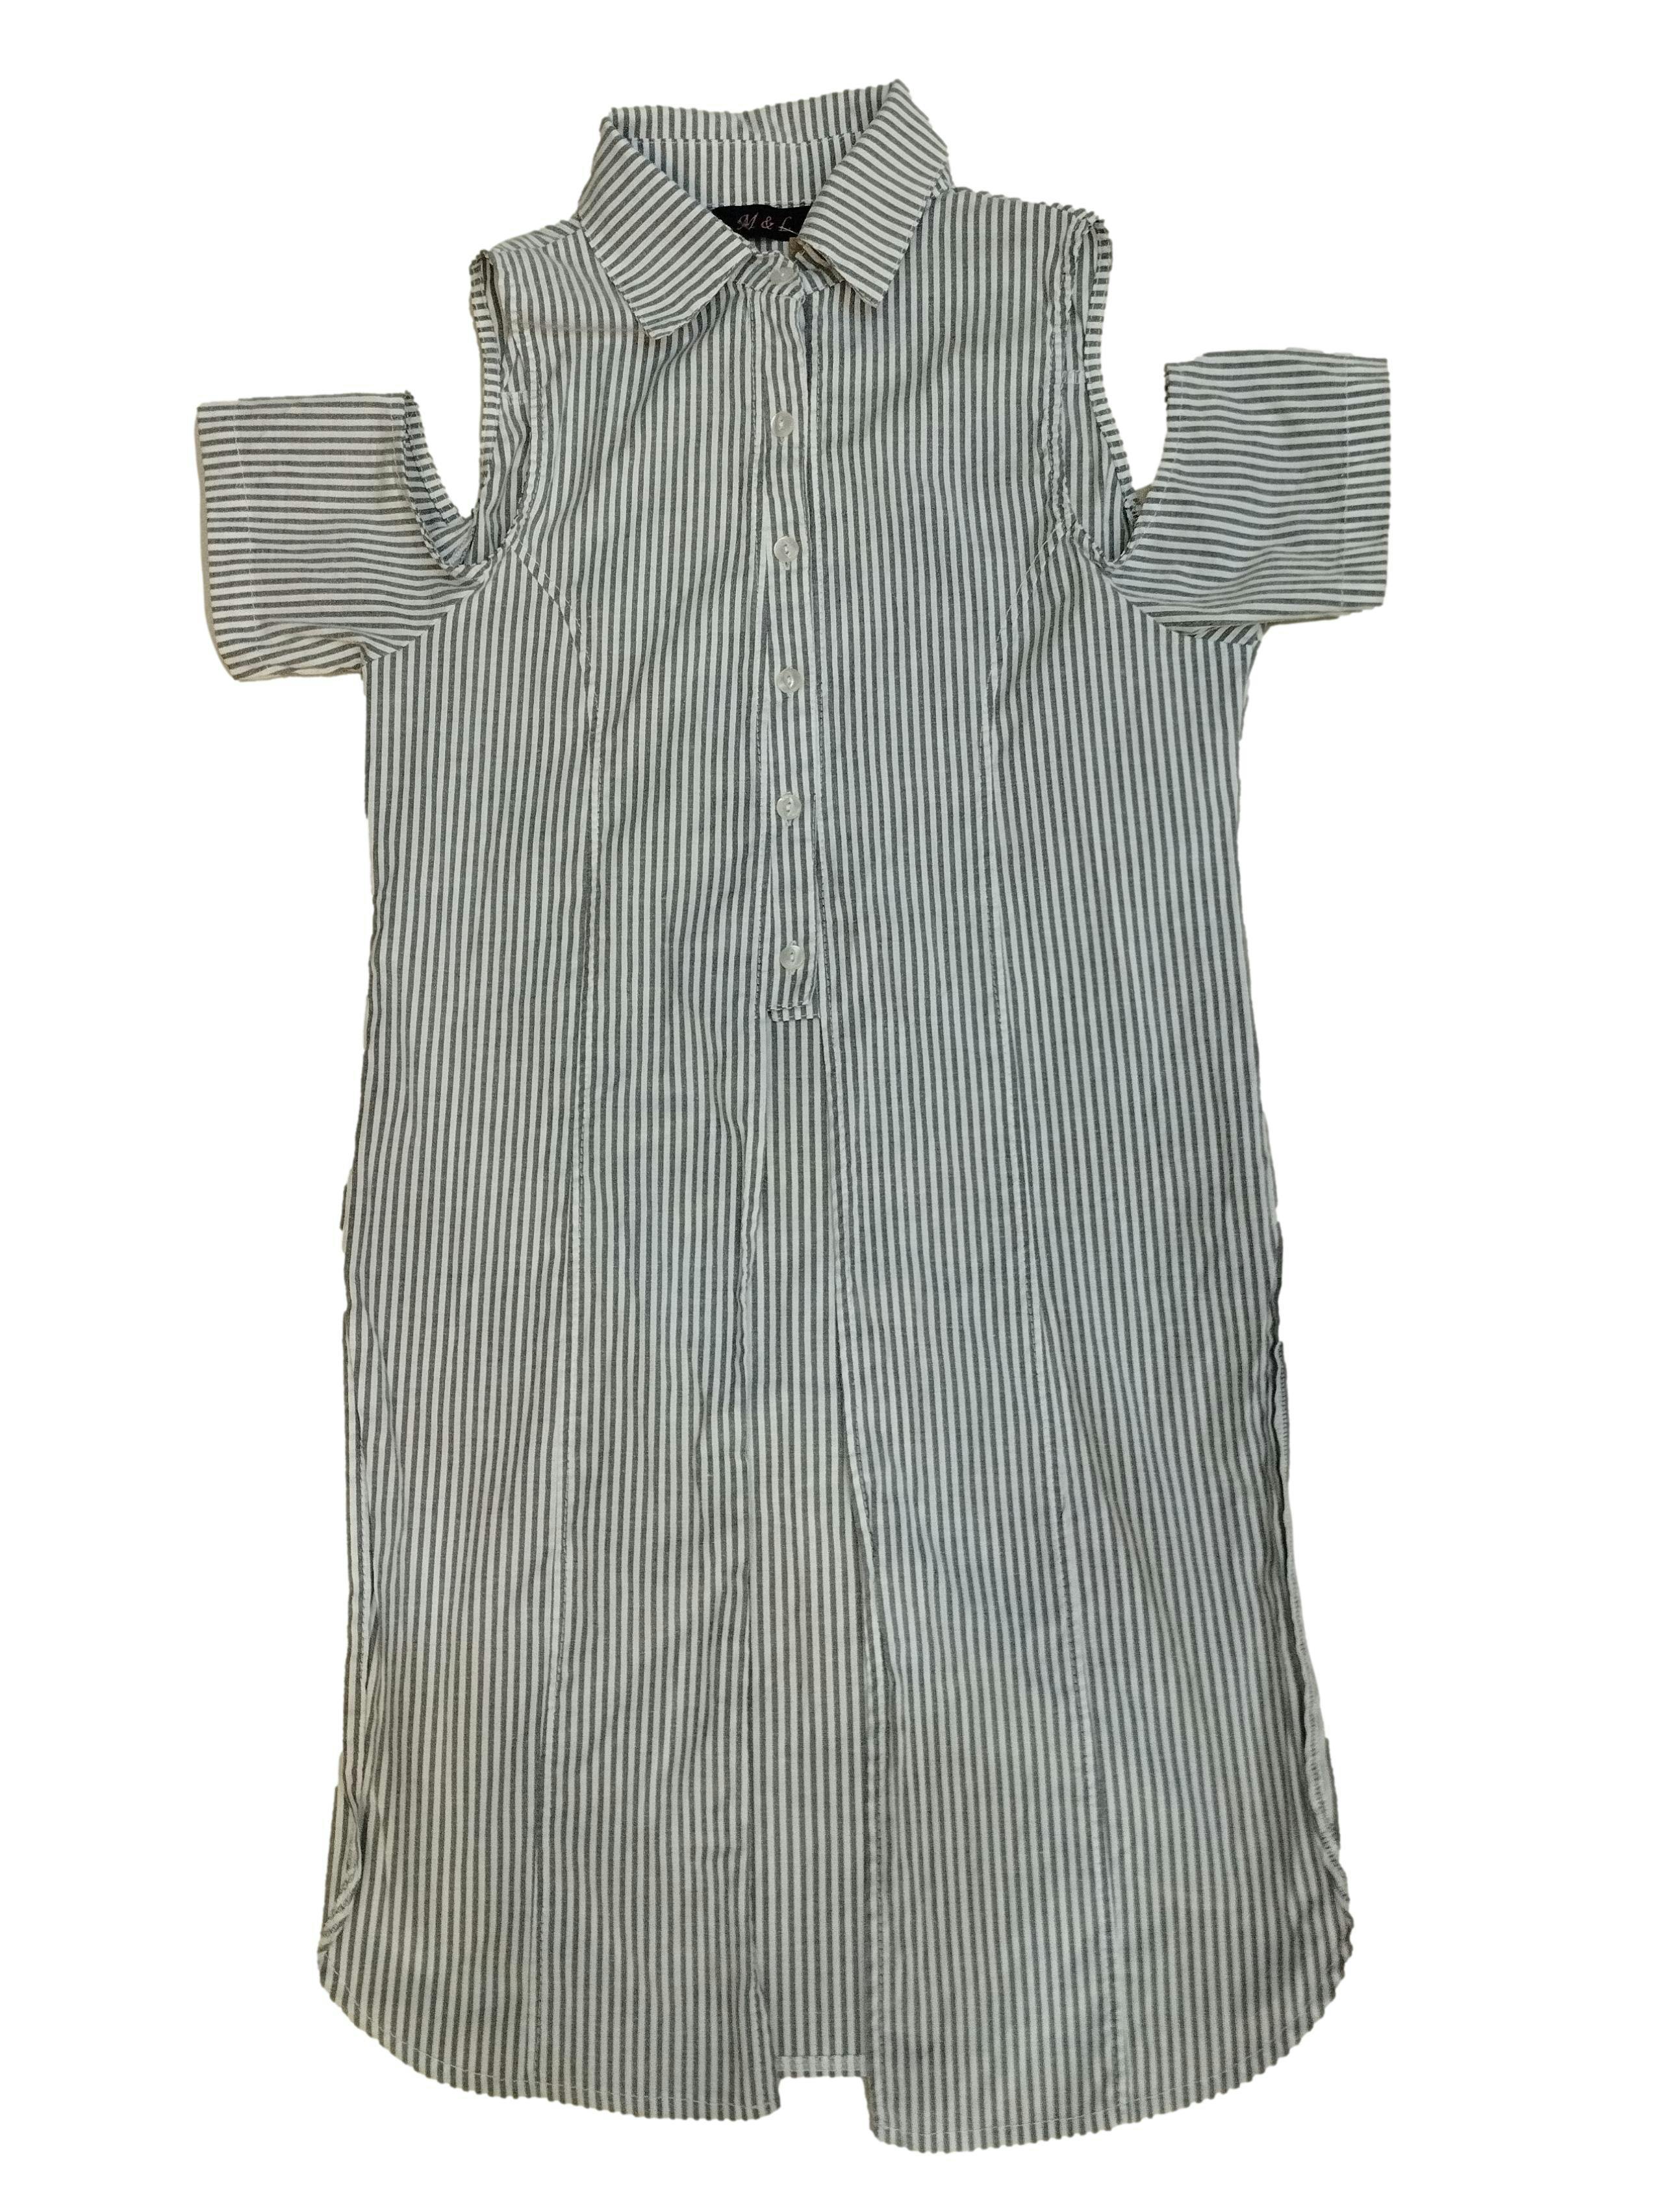 Blusa de cuello camisero a rayas grises y blancas con escote en los hombros, aberturas laterales y botones delanteros. Busto: 86 cm, Largo: 84 cm